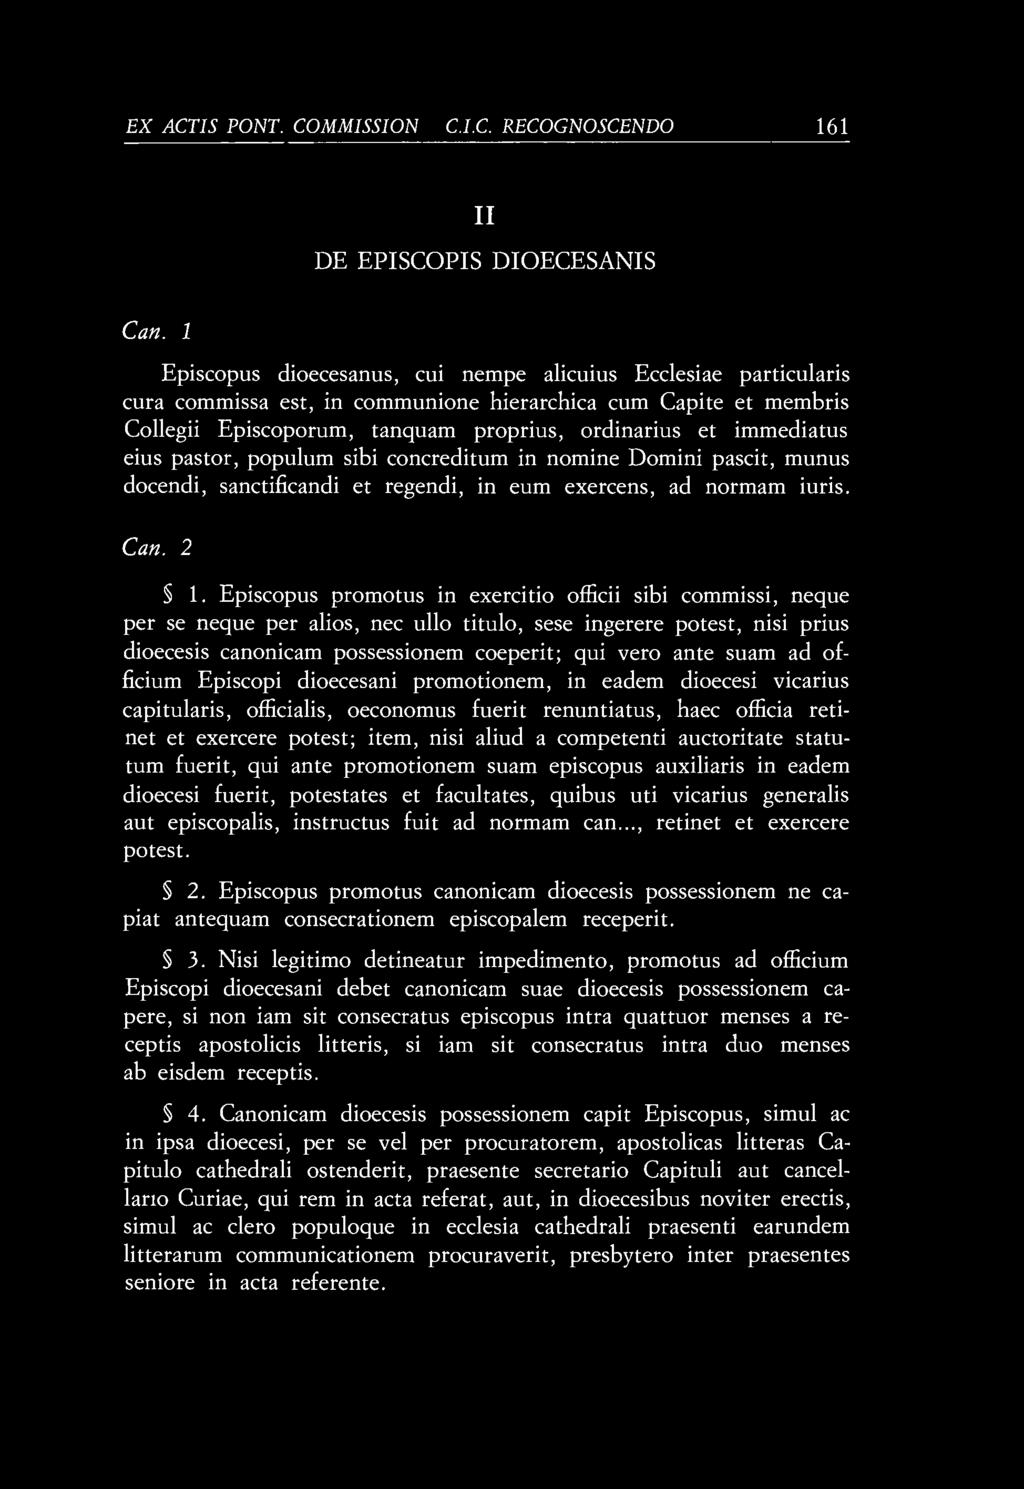 EX ACTIS PONT. COMMISSI ON IS C.I.C. RECOGNOSCENDO 161 II DE EPISCOPIS DIOECESANIS Can.